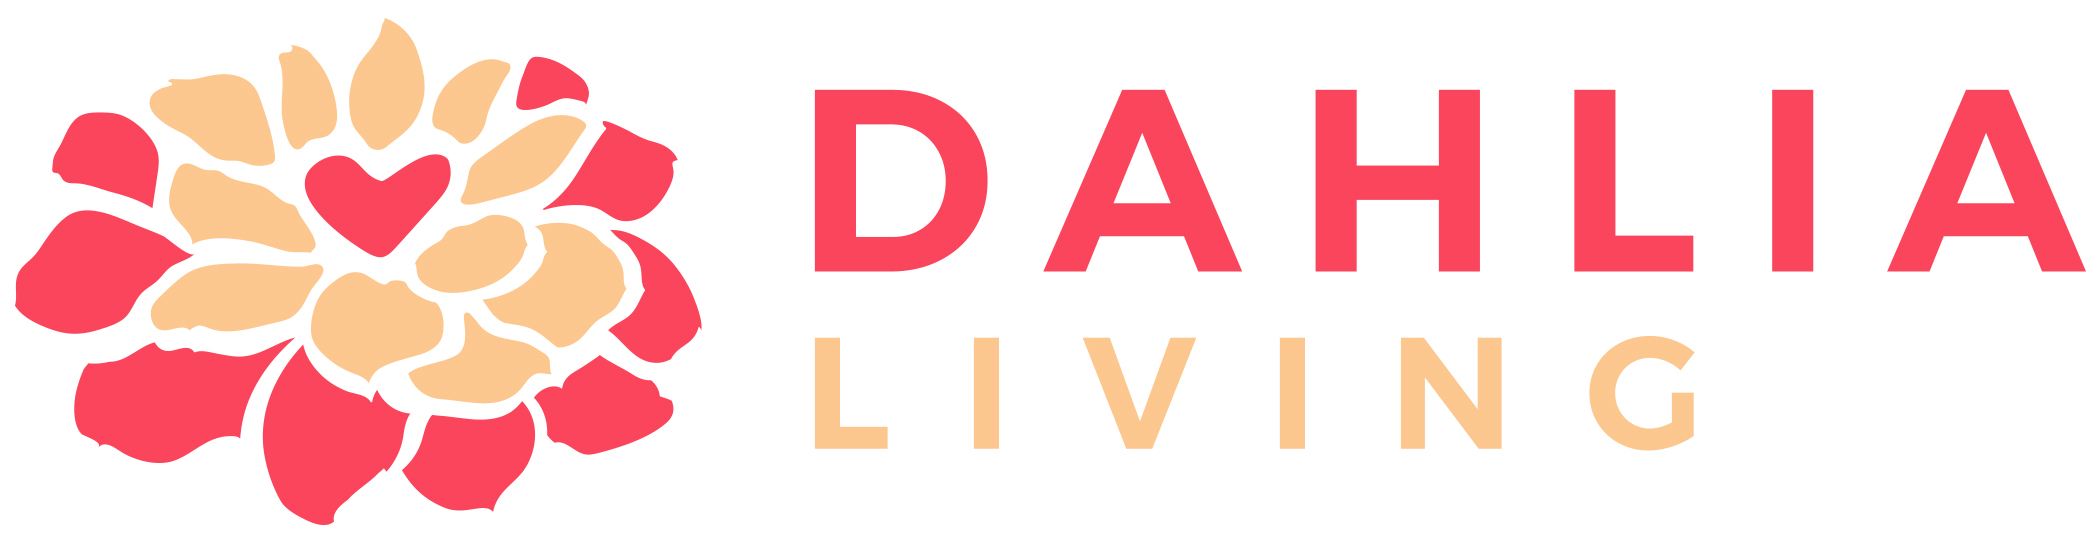 DAHLIA Living logo